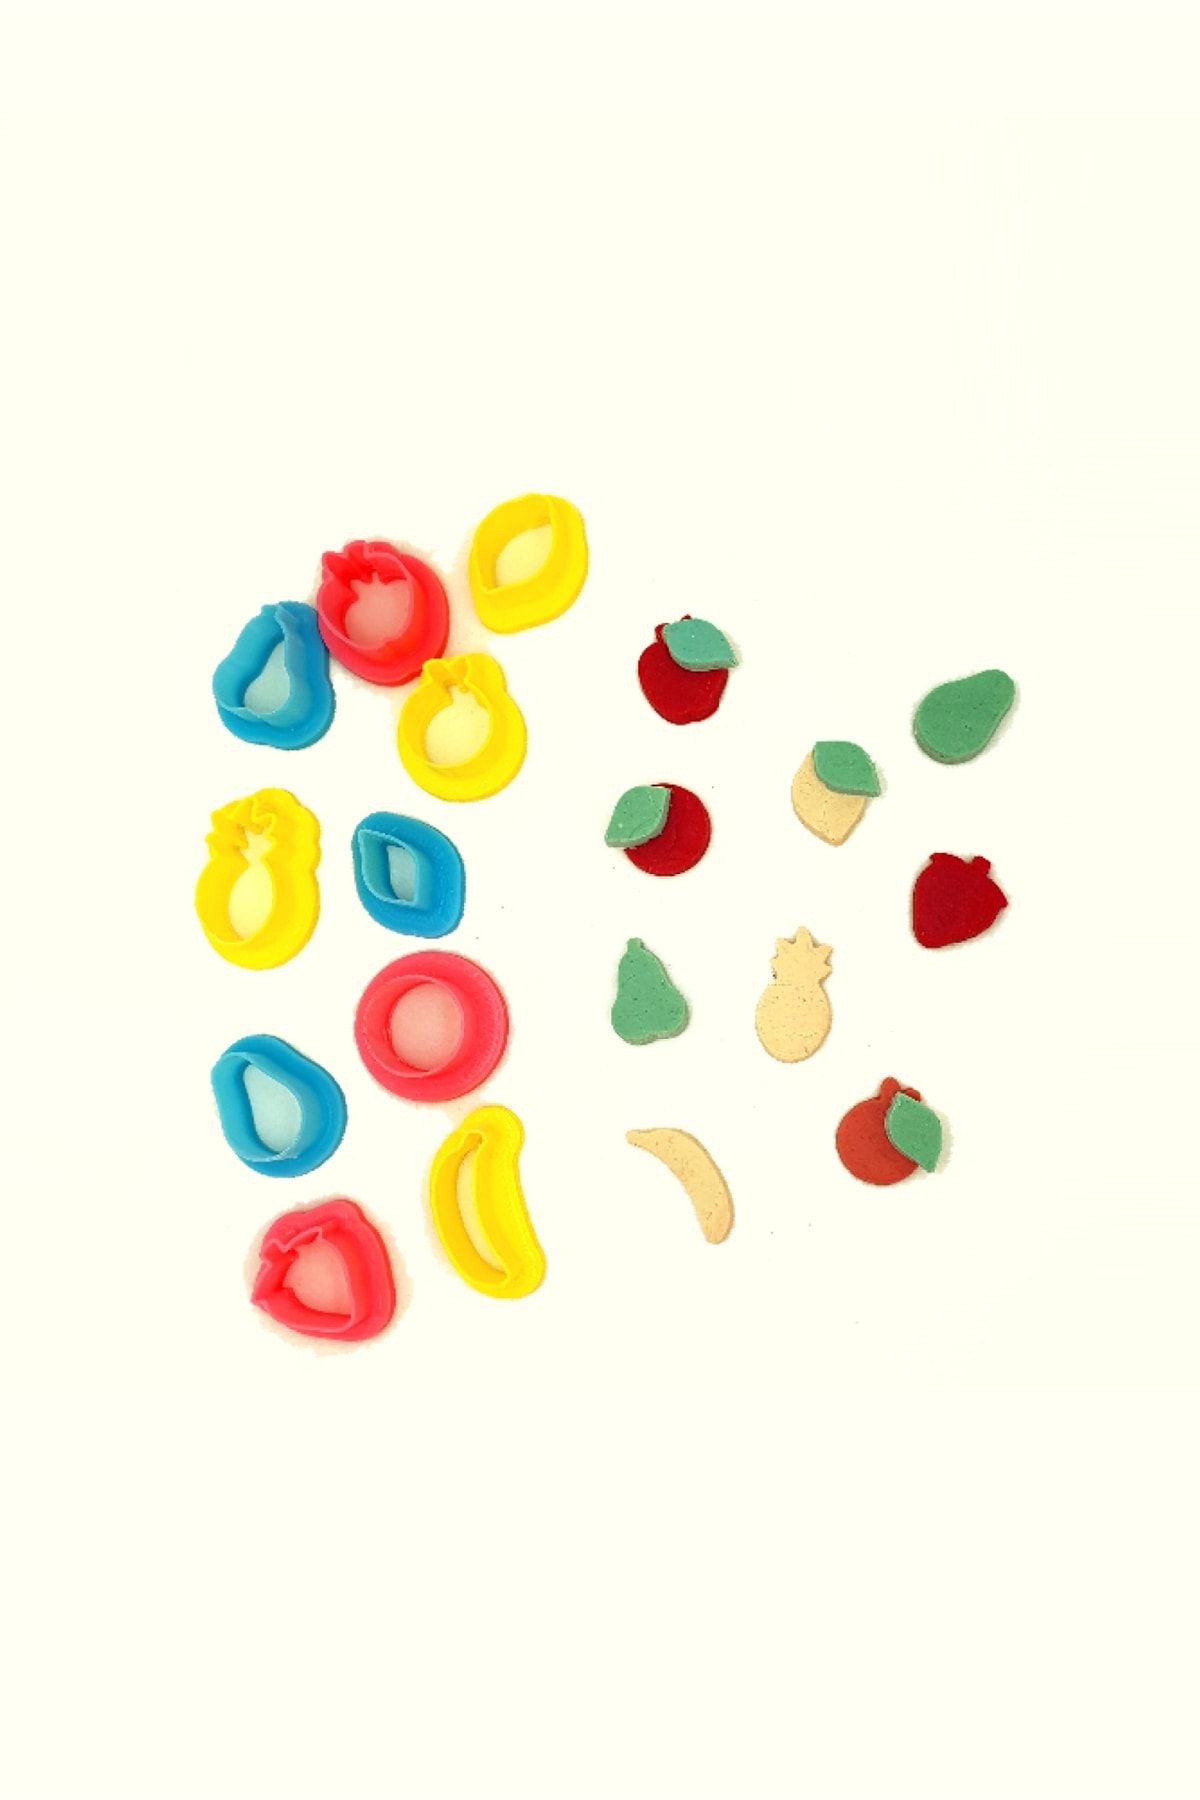 WE3D Yaz Aşkı - Mini Meyve Polimer Kil Seramik Hamuru Micro Kalıp Seti 10 Parça 1,3 - 1,5 - 2cm